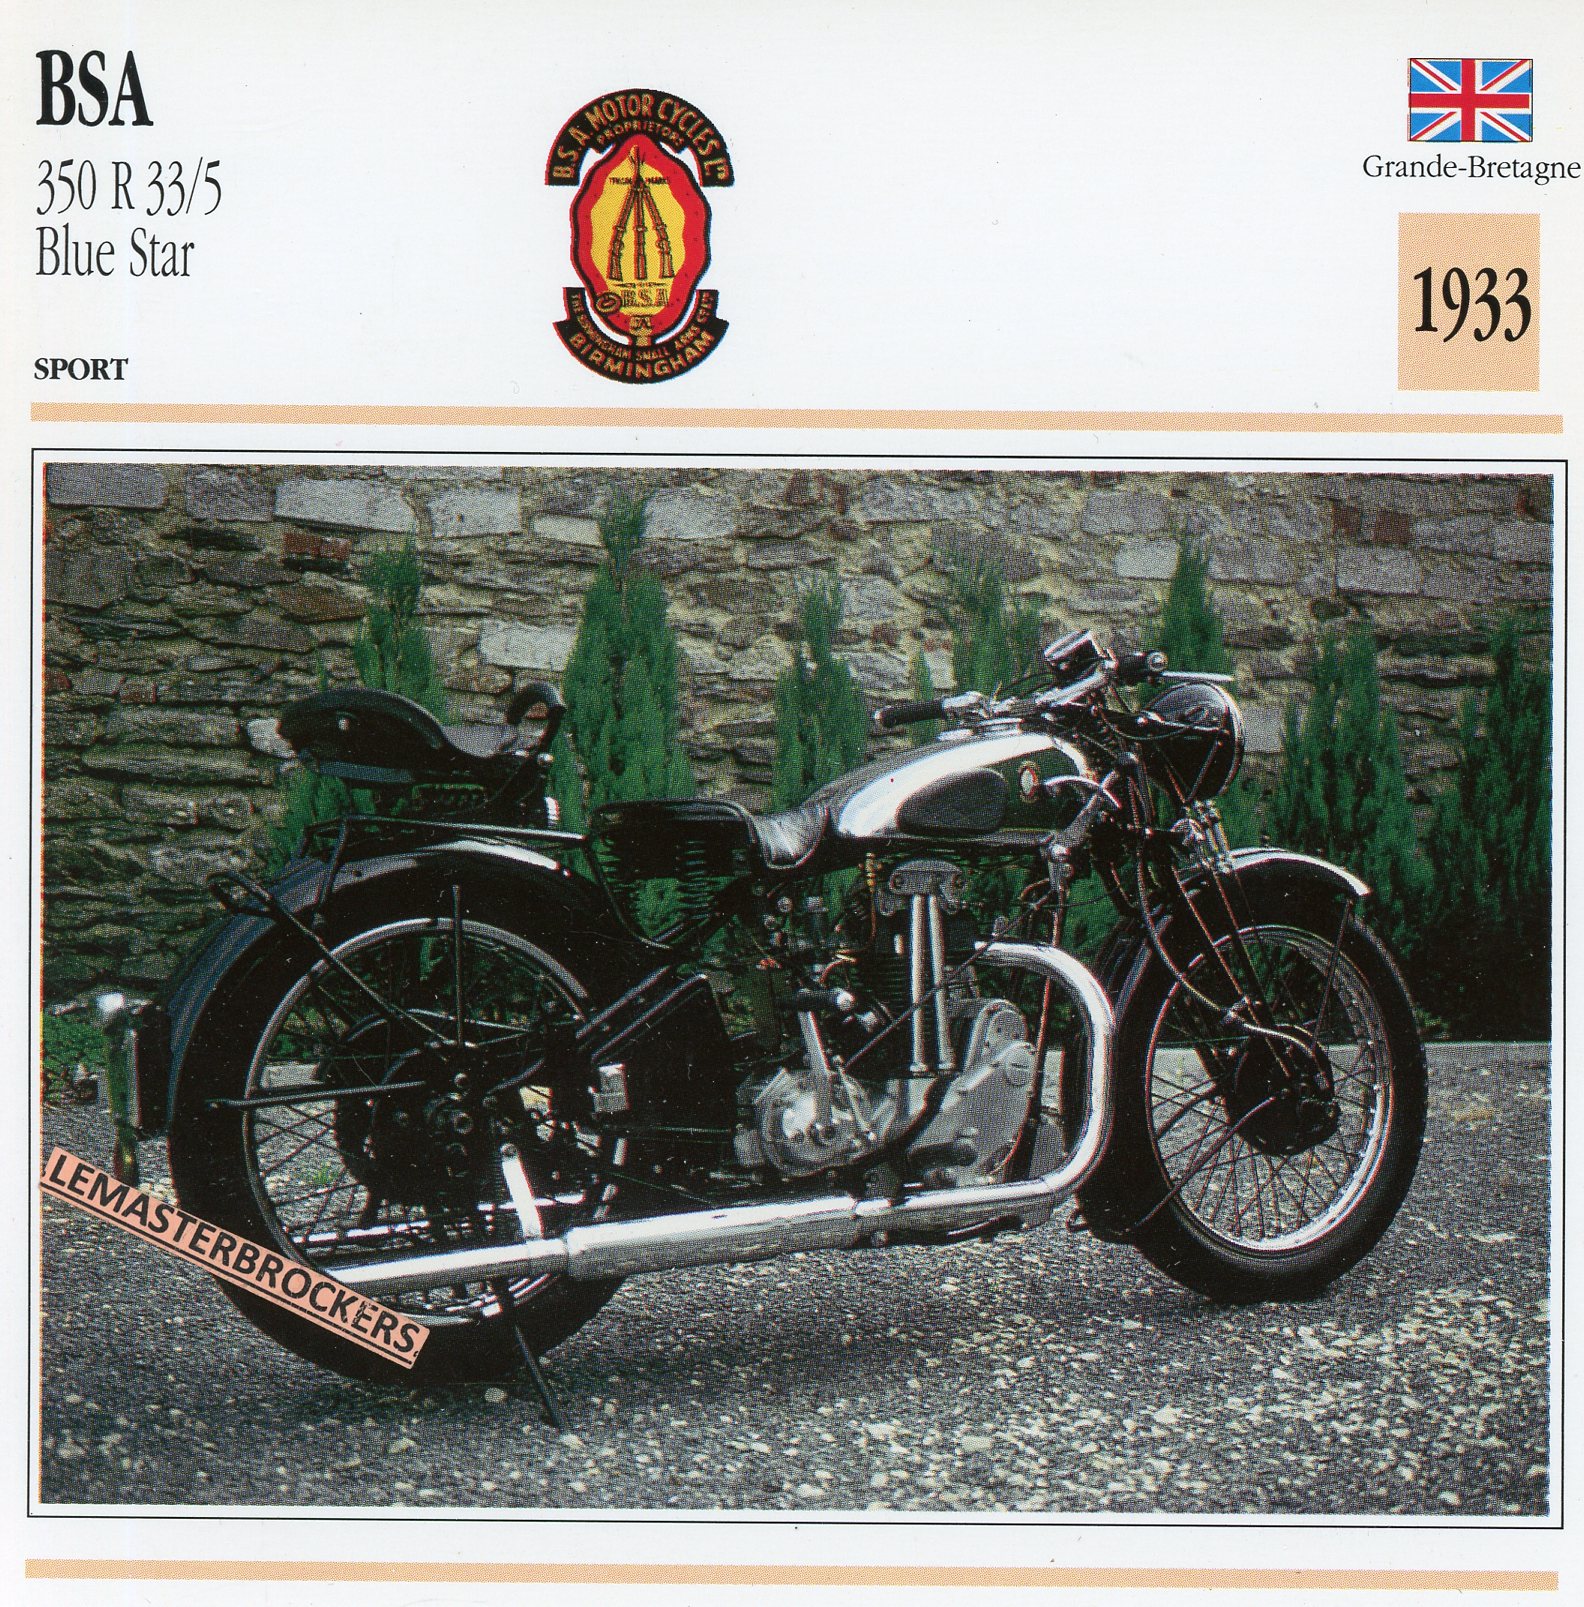 BSA-350-R33-5-BLUE-STAR-1933-FICHE-MOTO-CARDS-ATLAS-LEMASTERBROCKERS